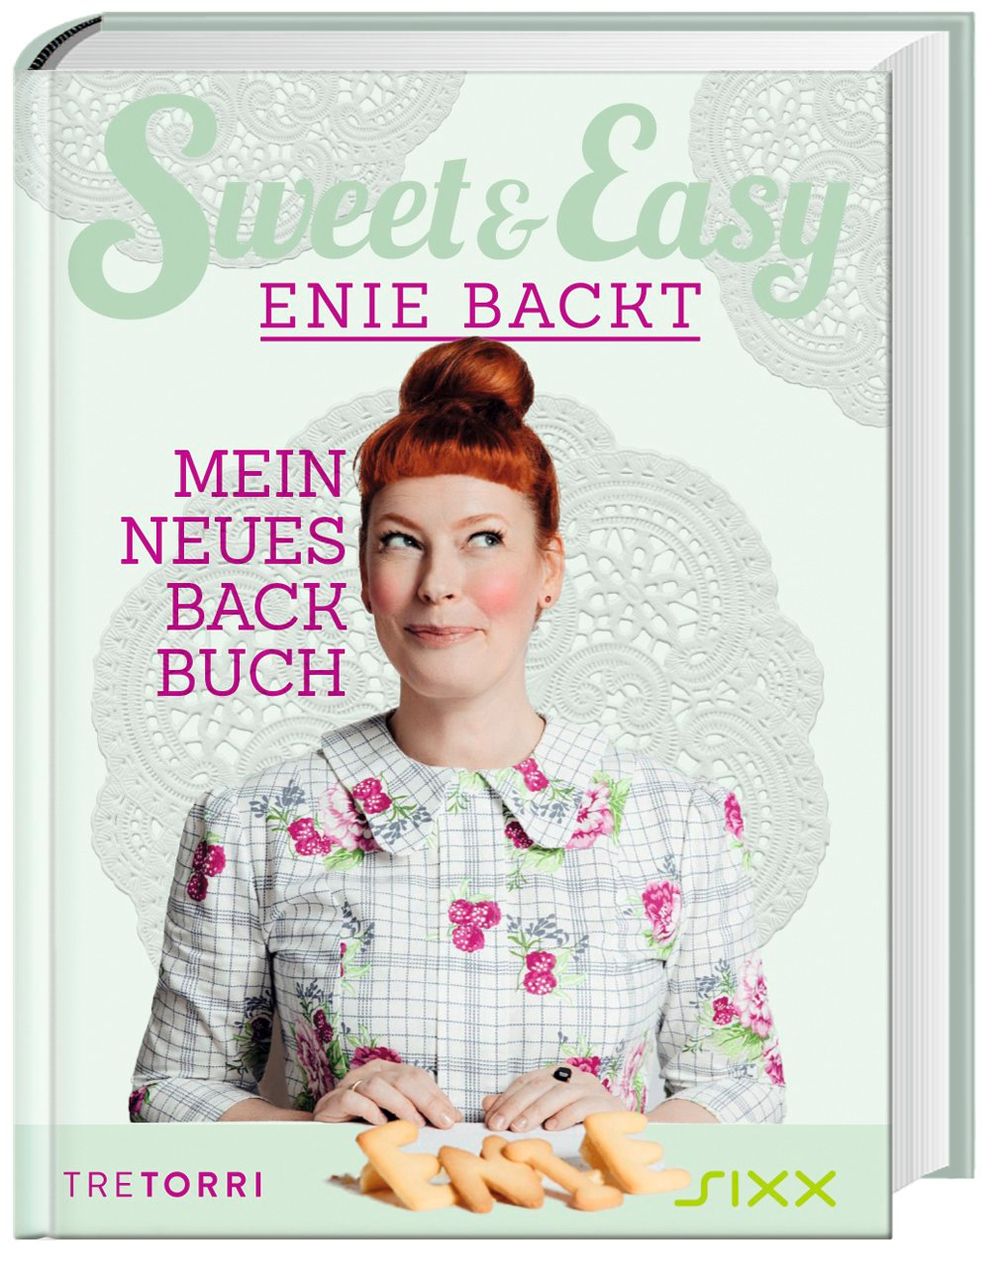 Sweet & Easy - Enie backt Buch versandkostenfrei bei Weltbild.at